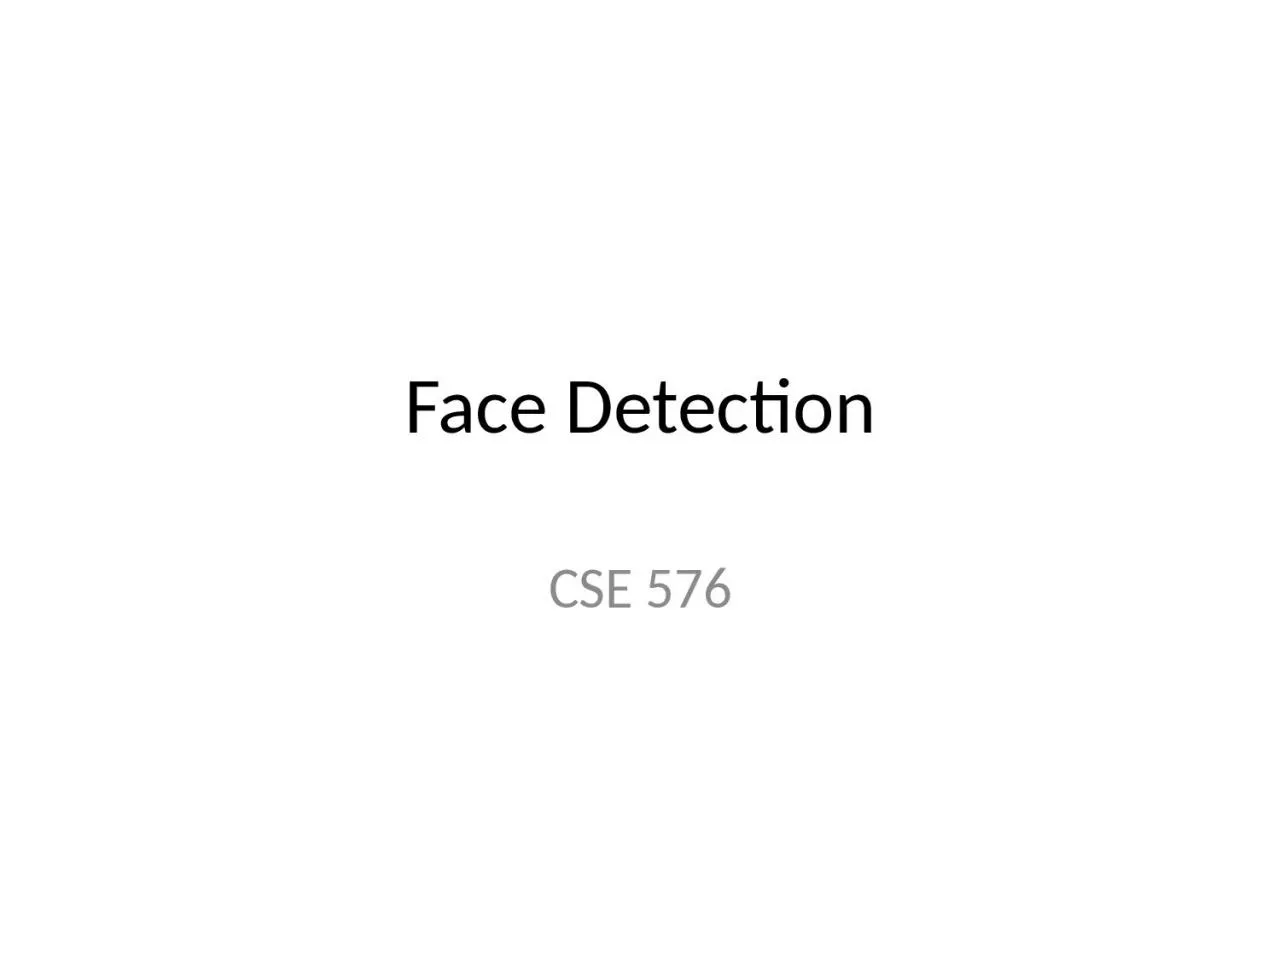 Face Detection CSE 576 Face detection